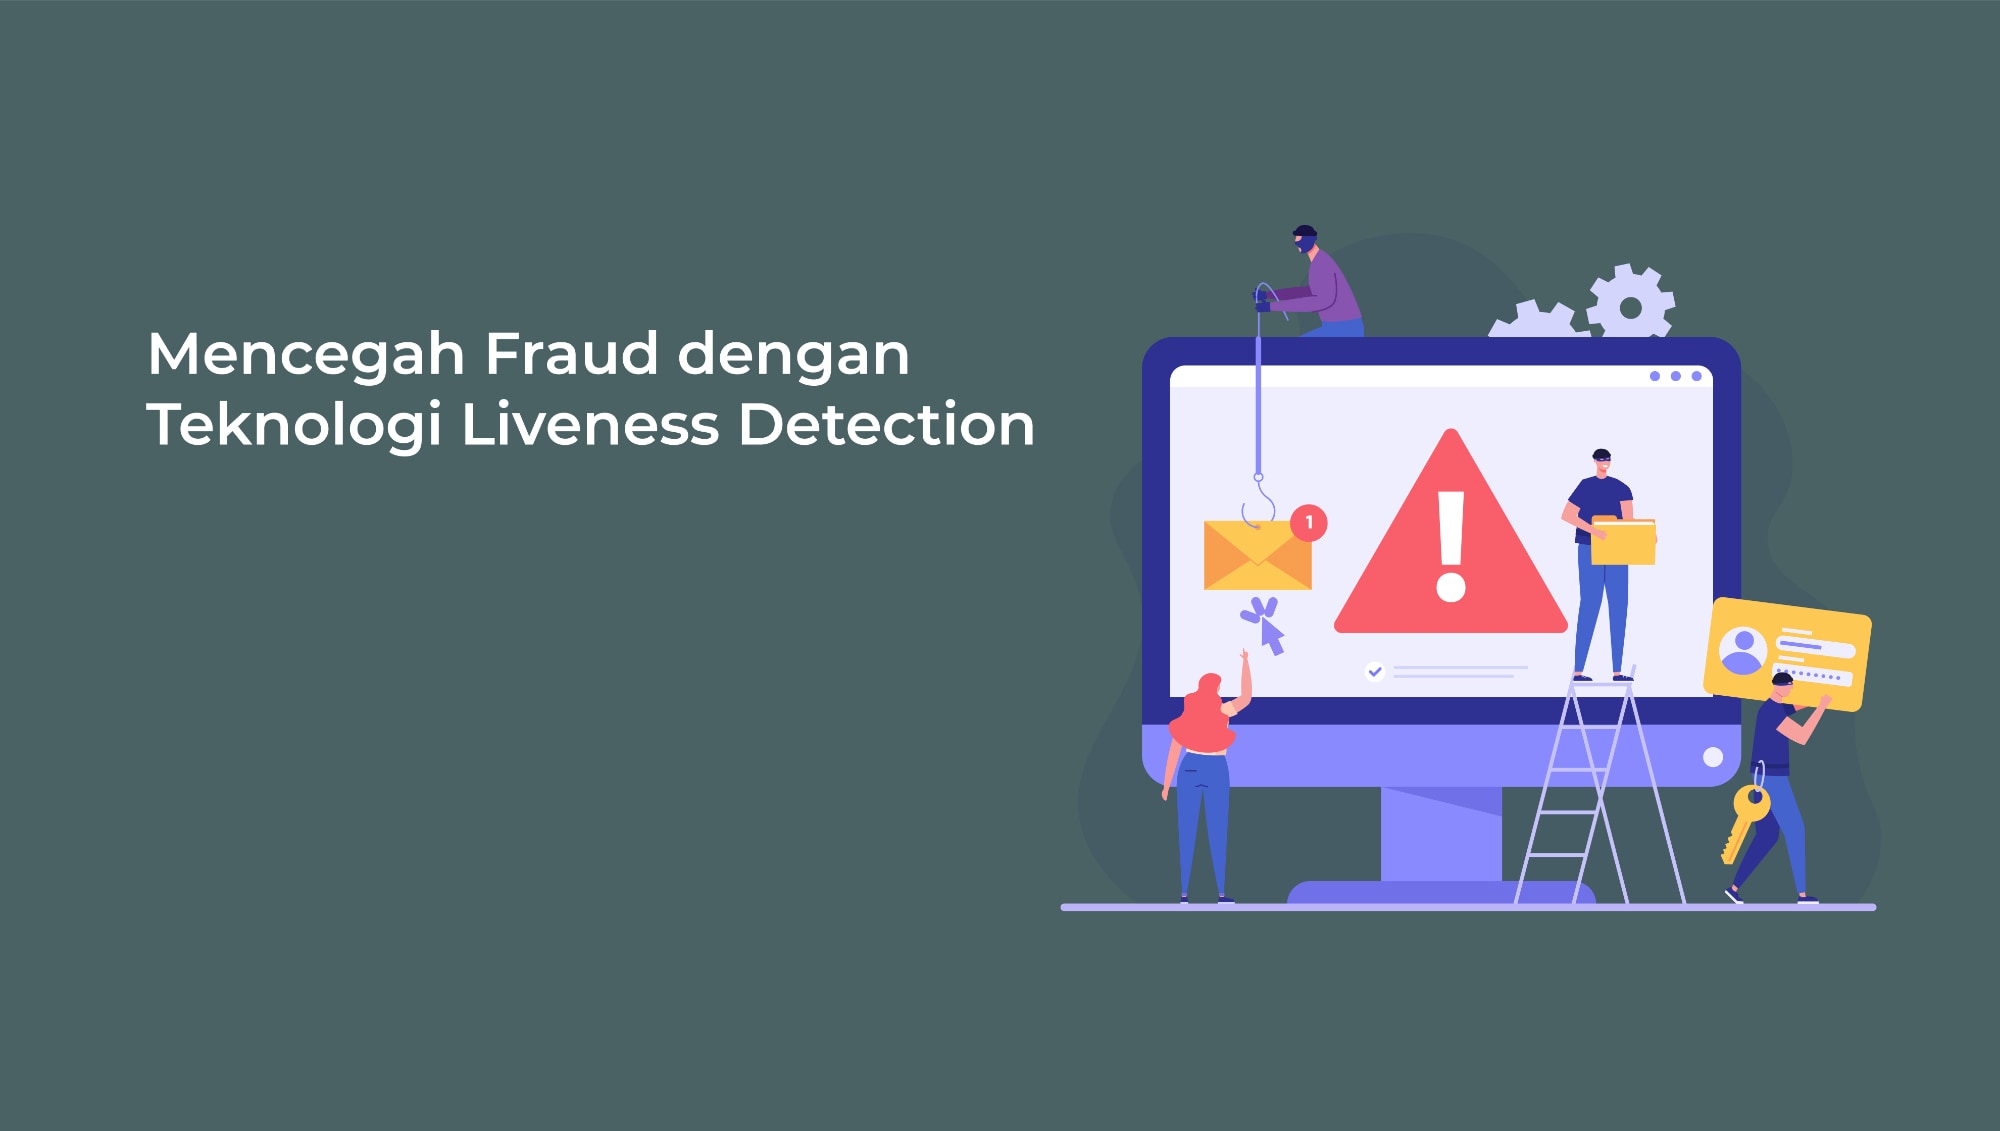 Mencegah fraud dengan teknologi liveness detection